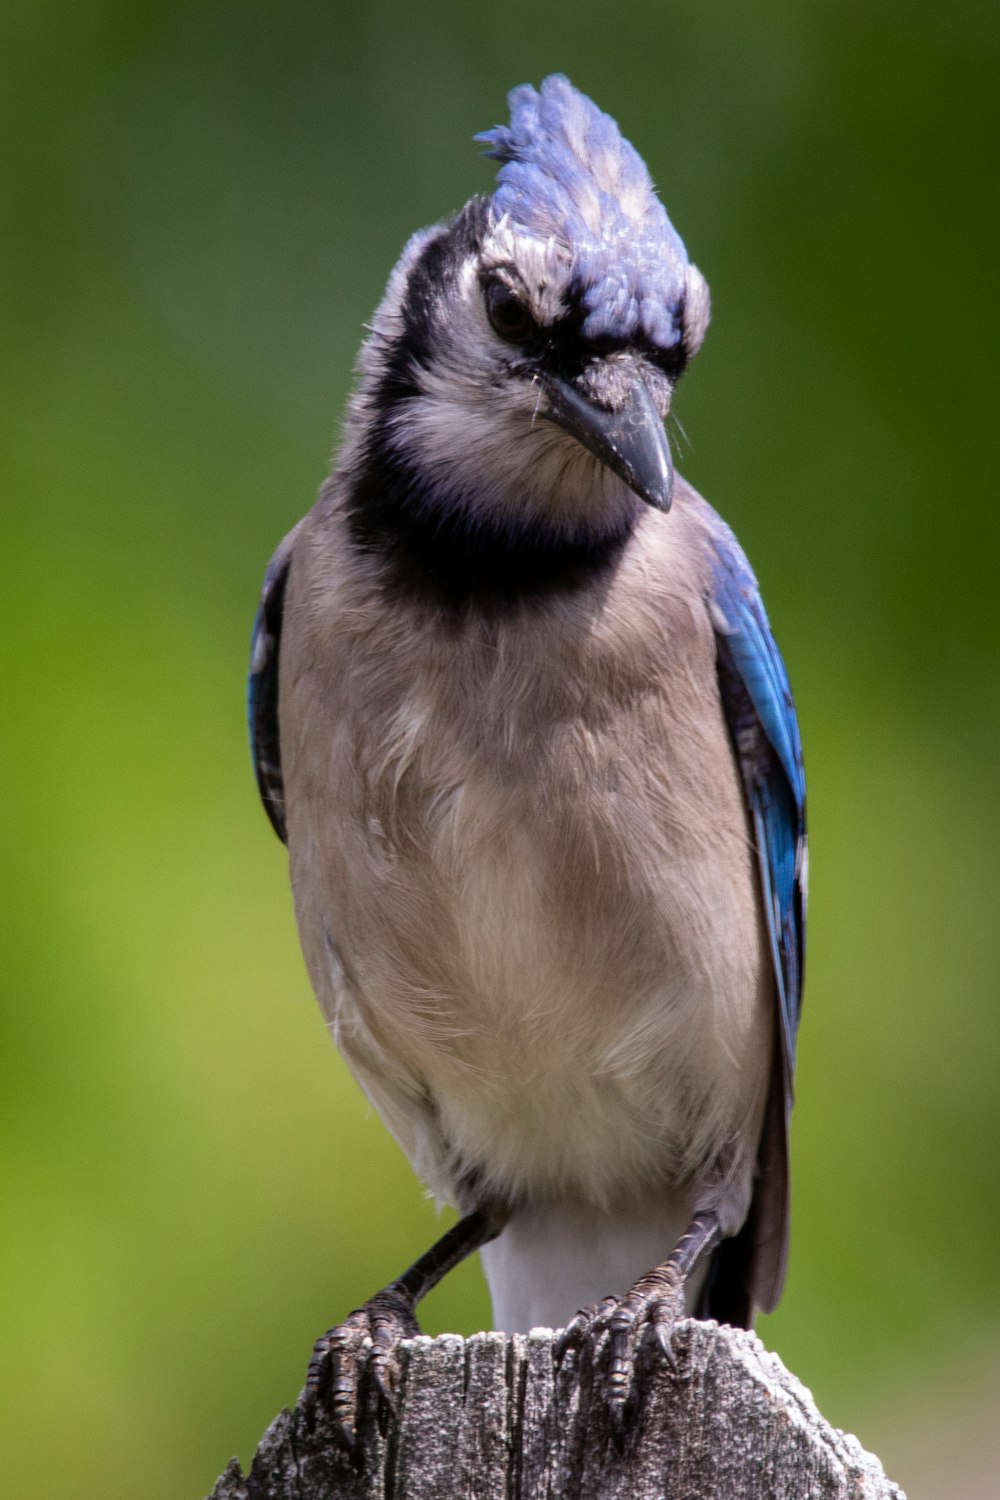 나무 기둥 위에 앉아 있는 파란 새